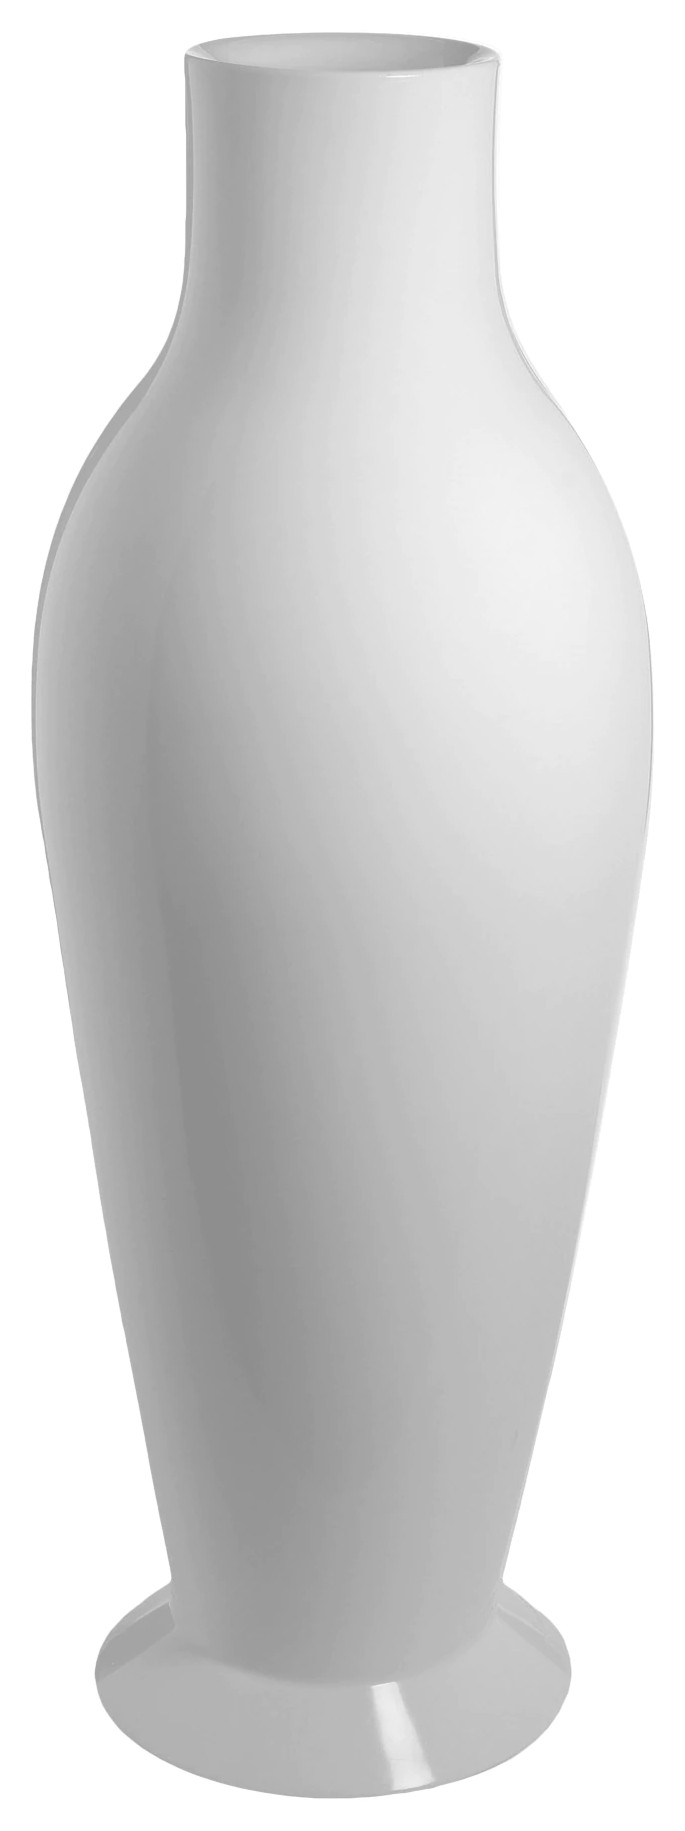 Vaza Kartell Misses Flower Power design Philippe Stark & Eugeni Quitllet h164cm alb lucios alb pret redus